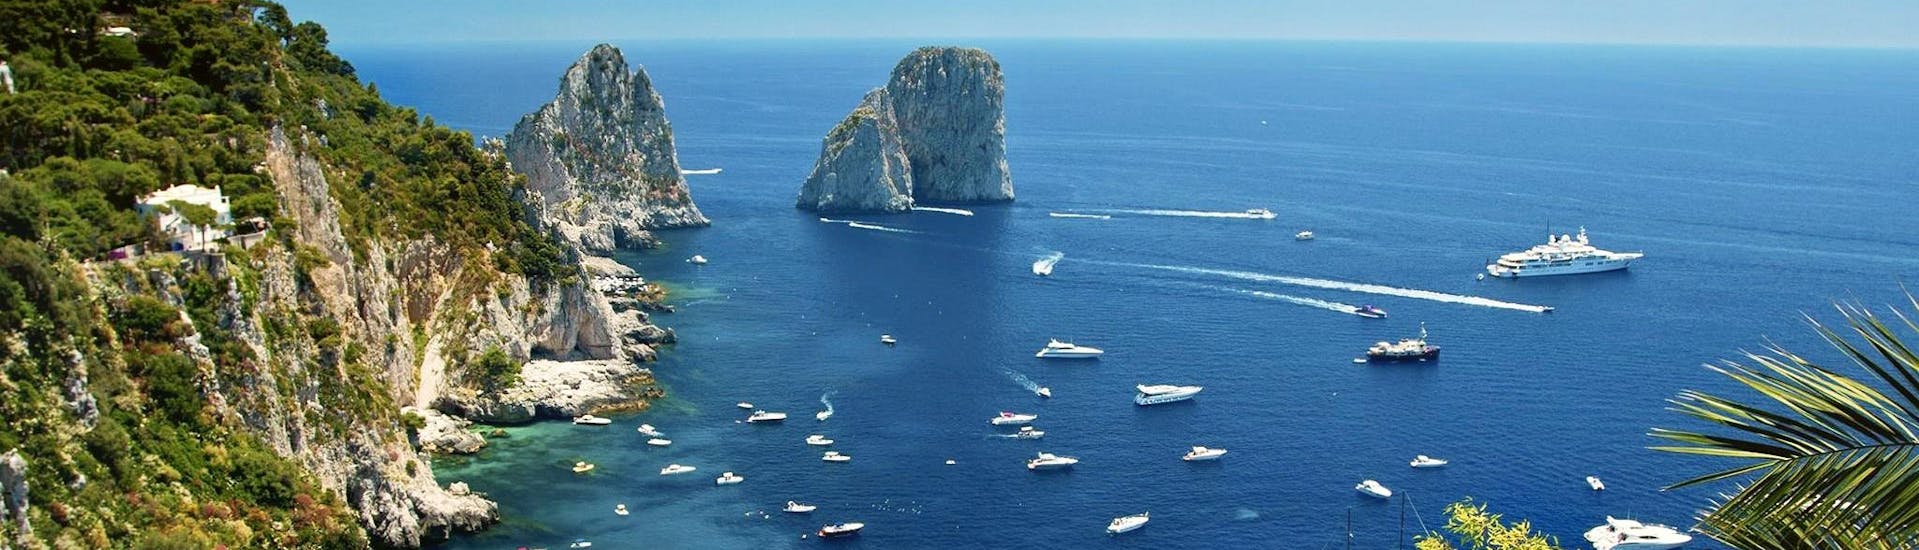 Vous pourrez admirer les Faraglioni de Capri de très près lors de l'une de nos balades en bateau.